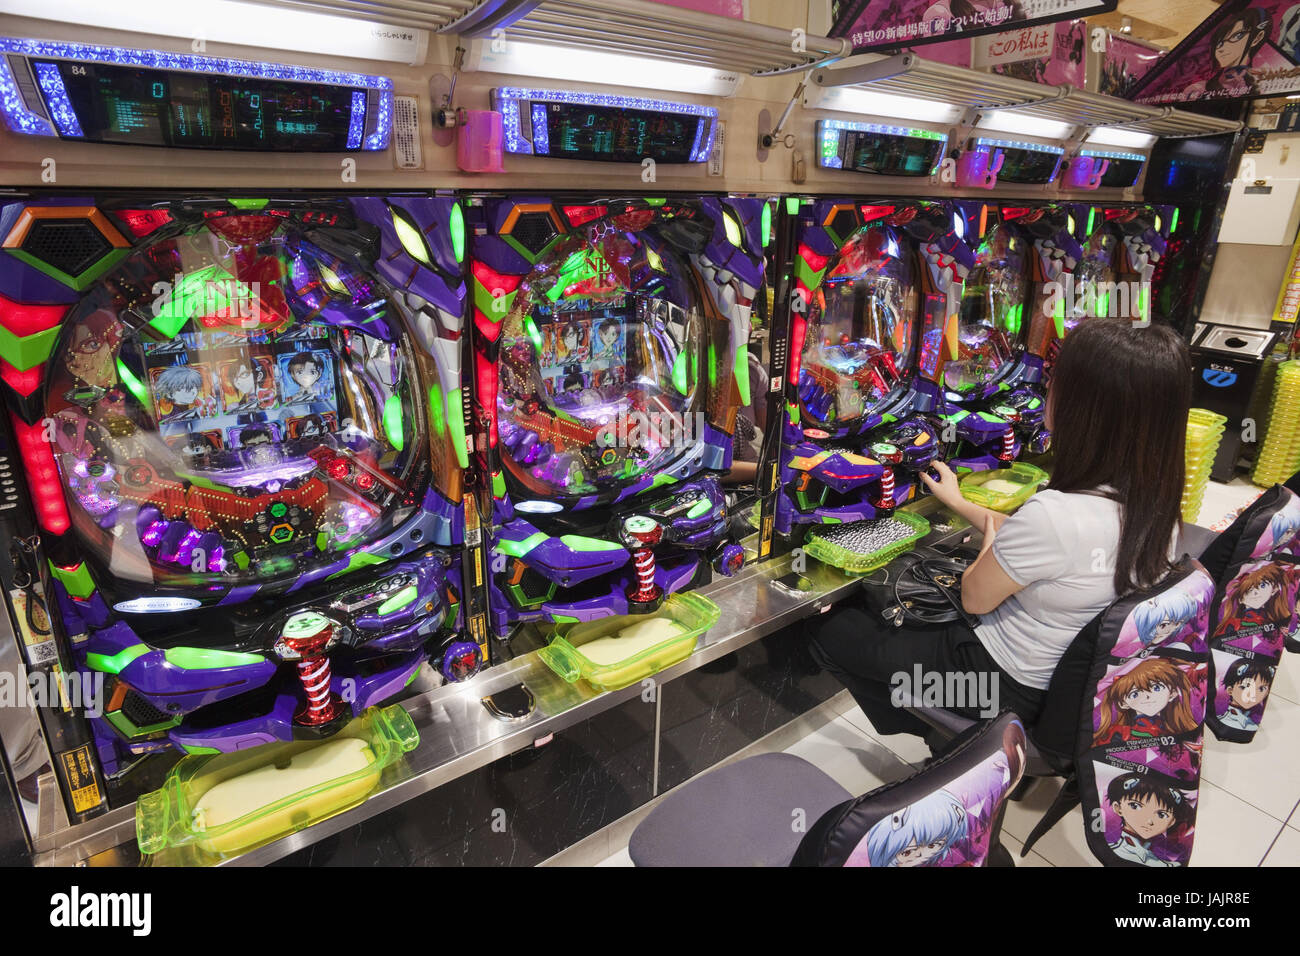 Japan,Tokyo,Shinjuku area,Pachinko arcade games, Stock Photo